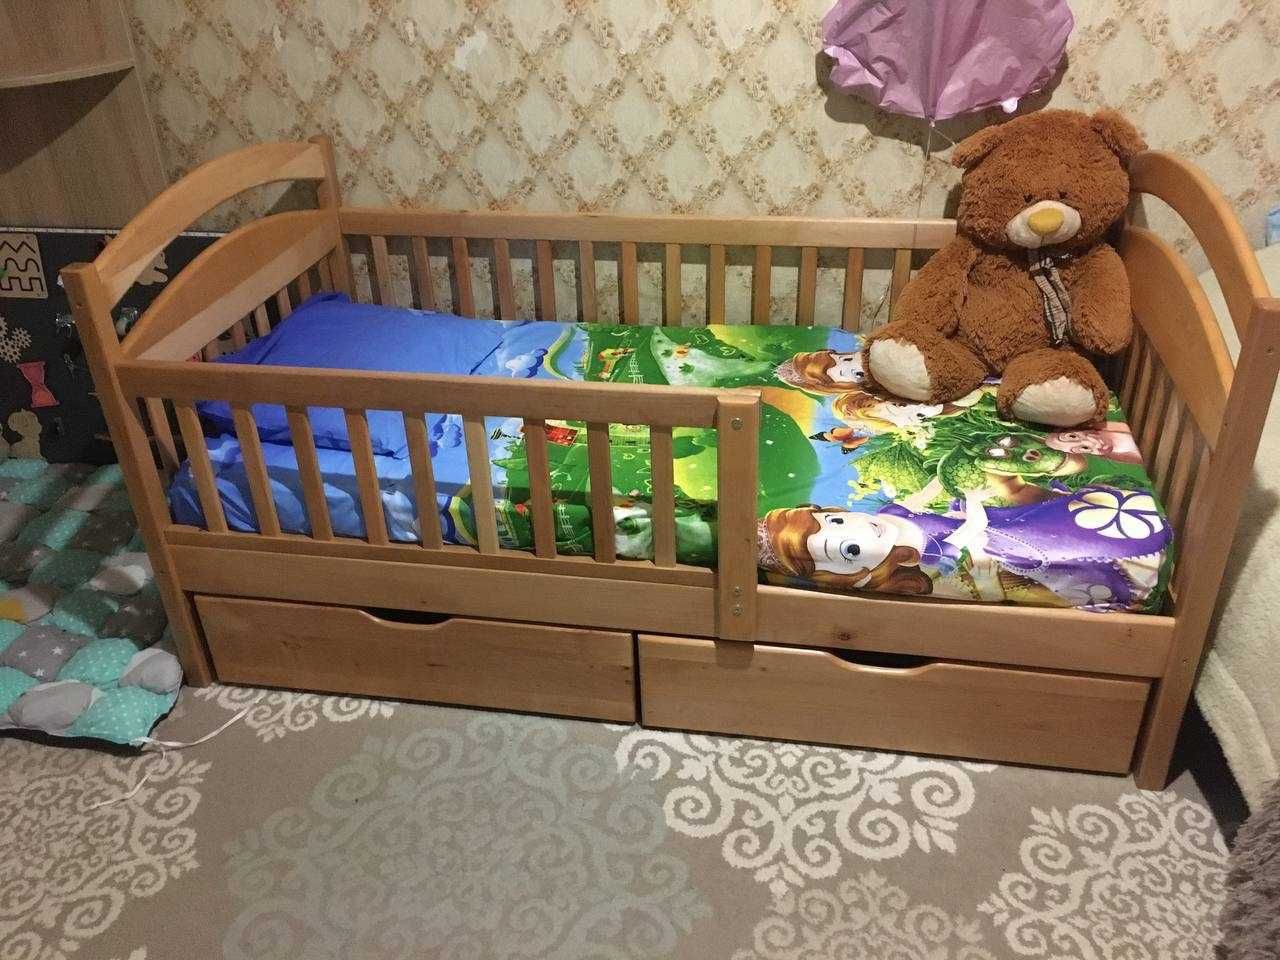 Кровать Карина мини 80х160 см, комплект с матрасом недорого